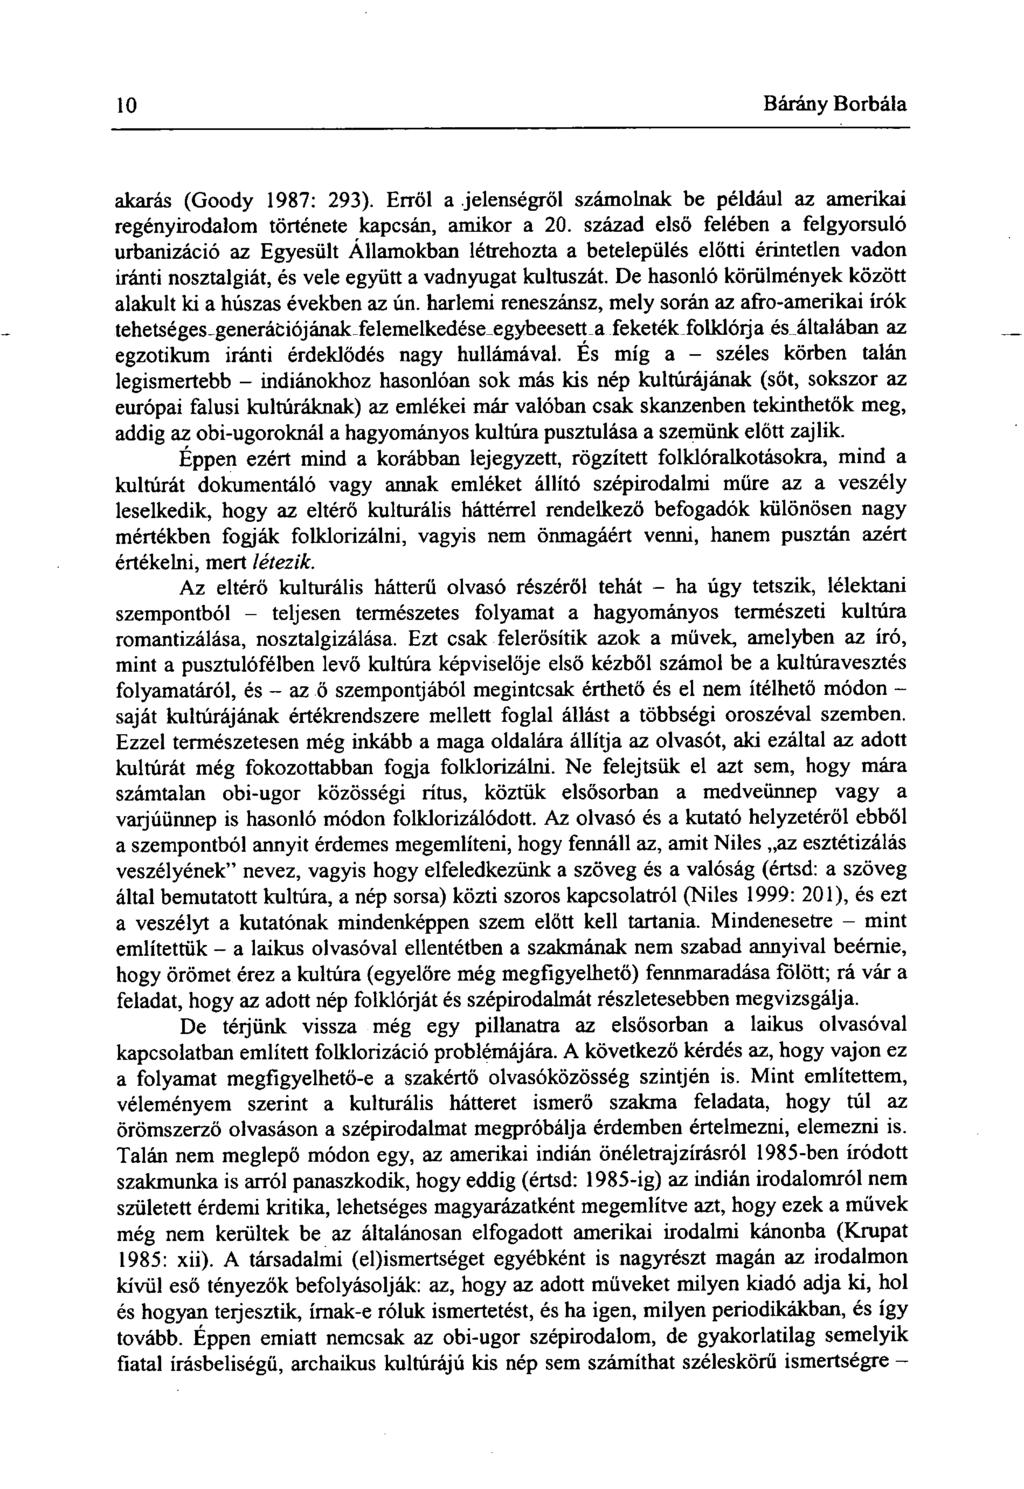 Acta Universitatis Szegediensis Sectio lingüistica NYELVTUDOMÁNY. Új folyam  (XLII.) Szeged PDF Free Download